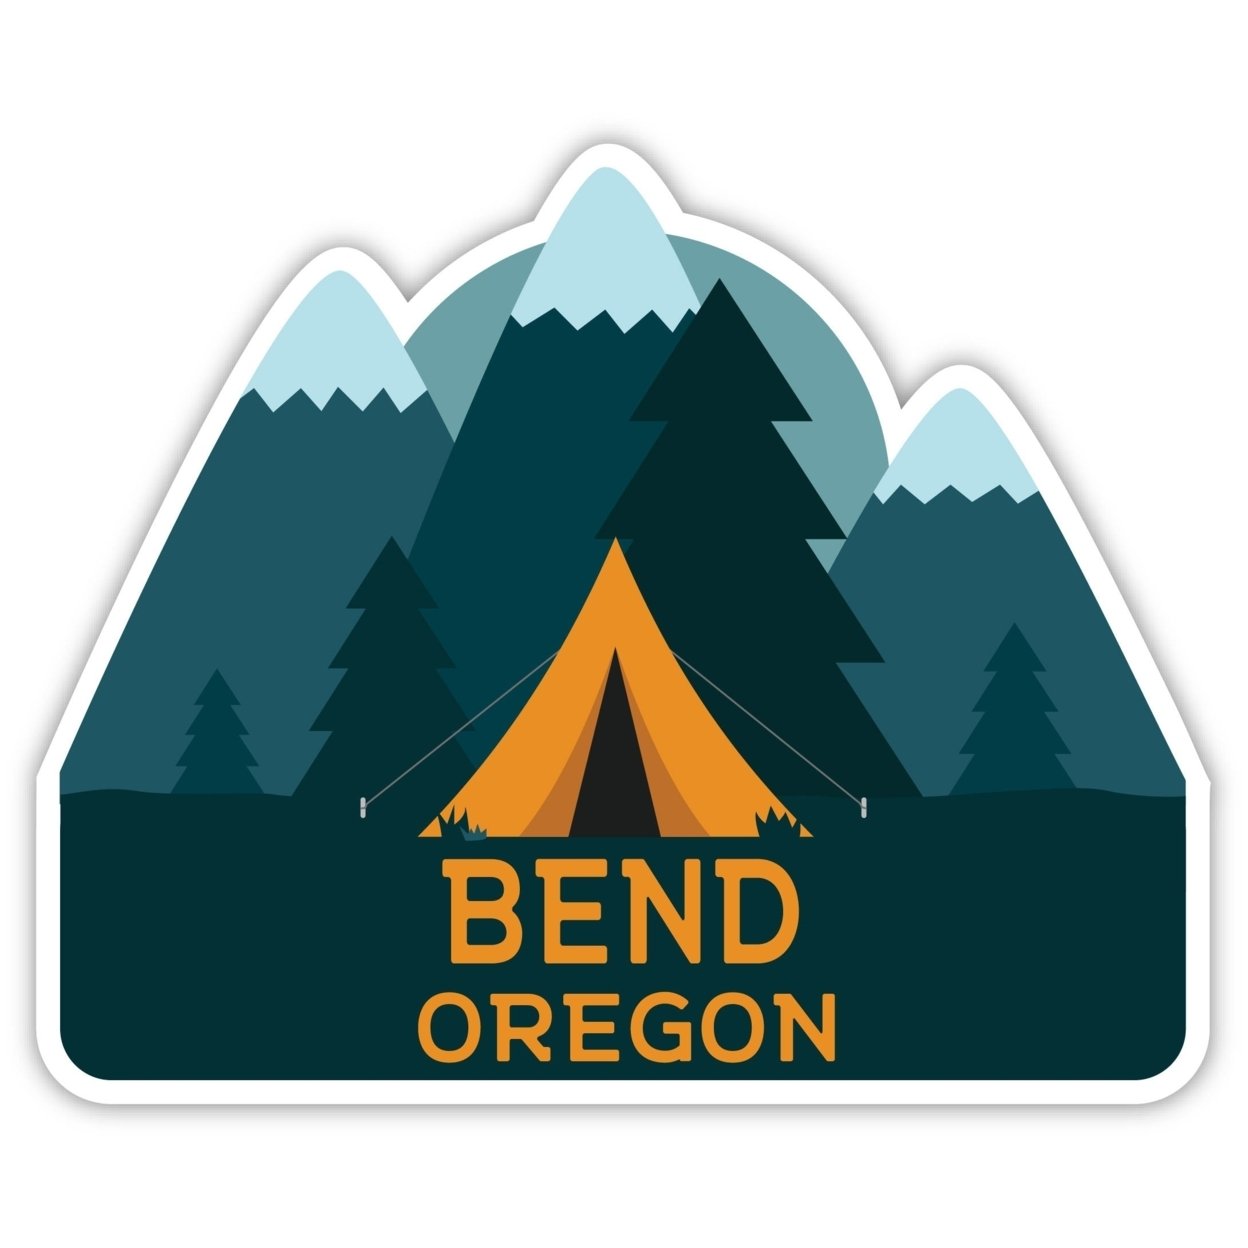 Bend Oregon Souvenir Decorative Stickers (Choose Theme And Size) - Single Unit, 2-Inch, Tent